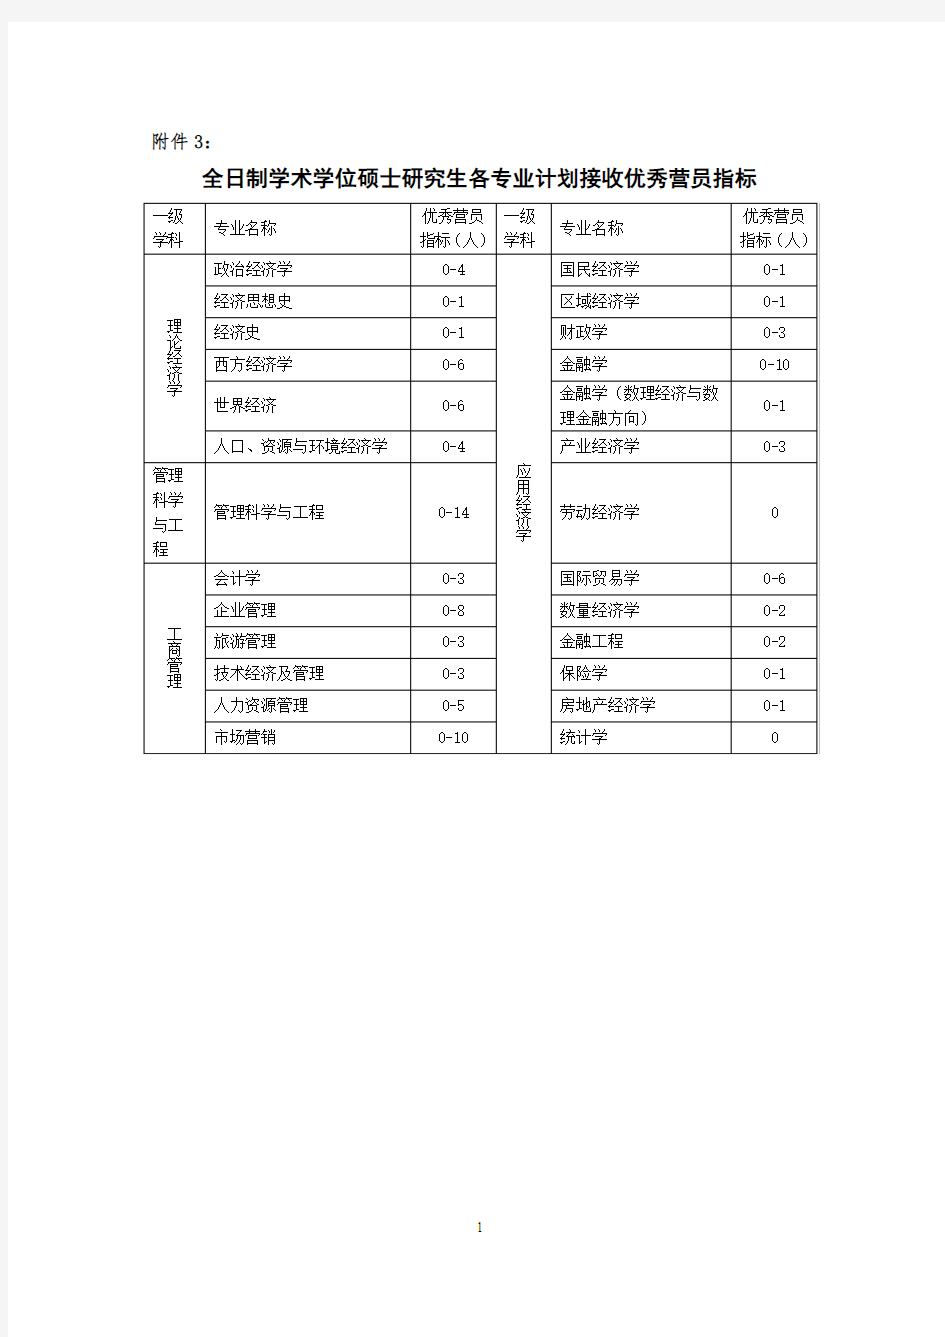 2019年武汉大学夏令营优秀营员人数预期